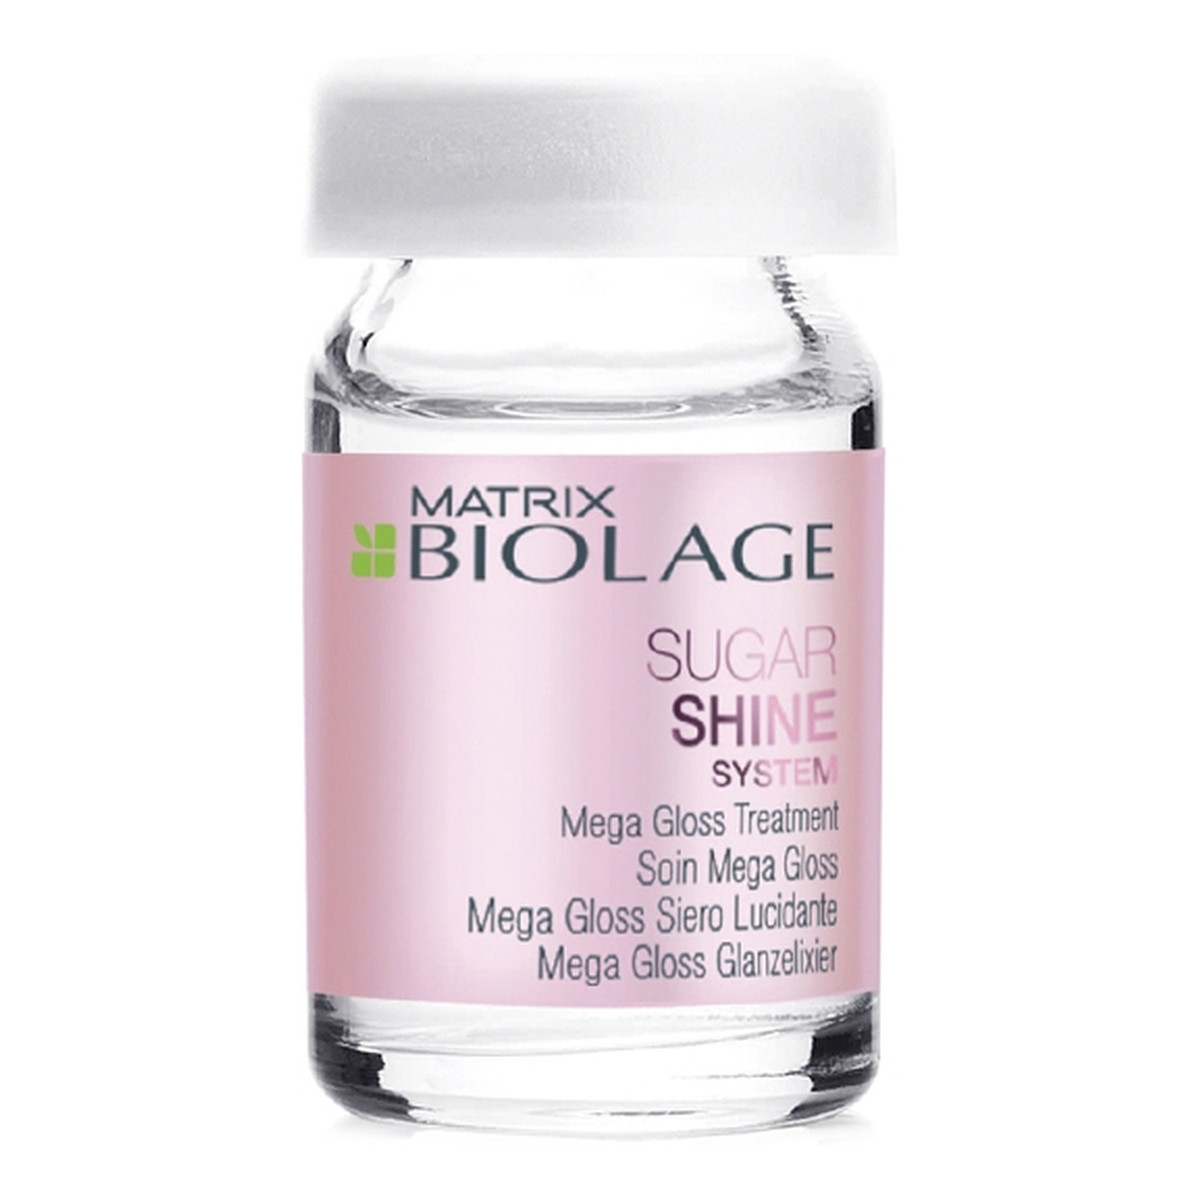 Matrix Biolage Sugar Shine System Mega Gloss Treatment wygładzająco-nabłyszczająca odżywka do włosów 10x6ml 60ml